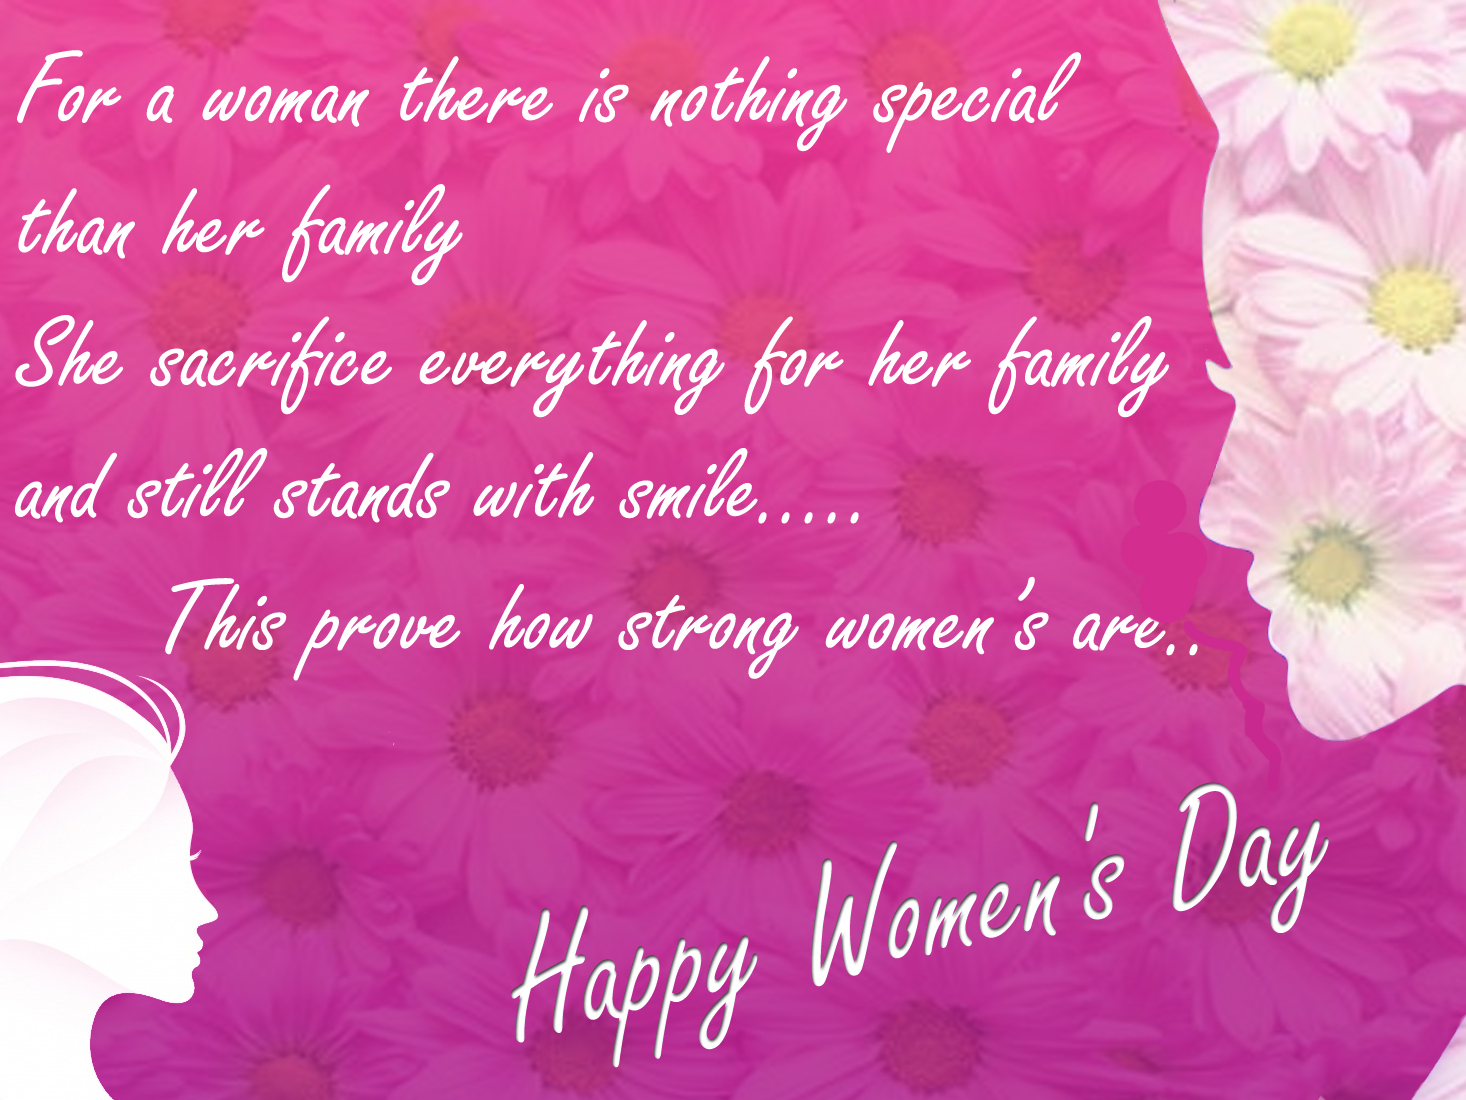 Happy Women's Day | Odeta Rose by Odeta Rose on Dribbble